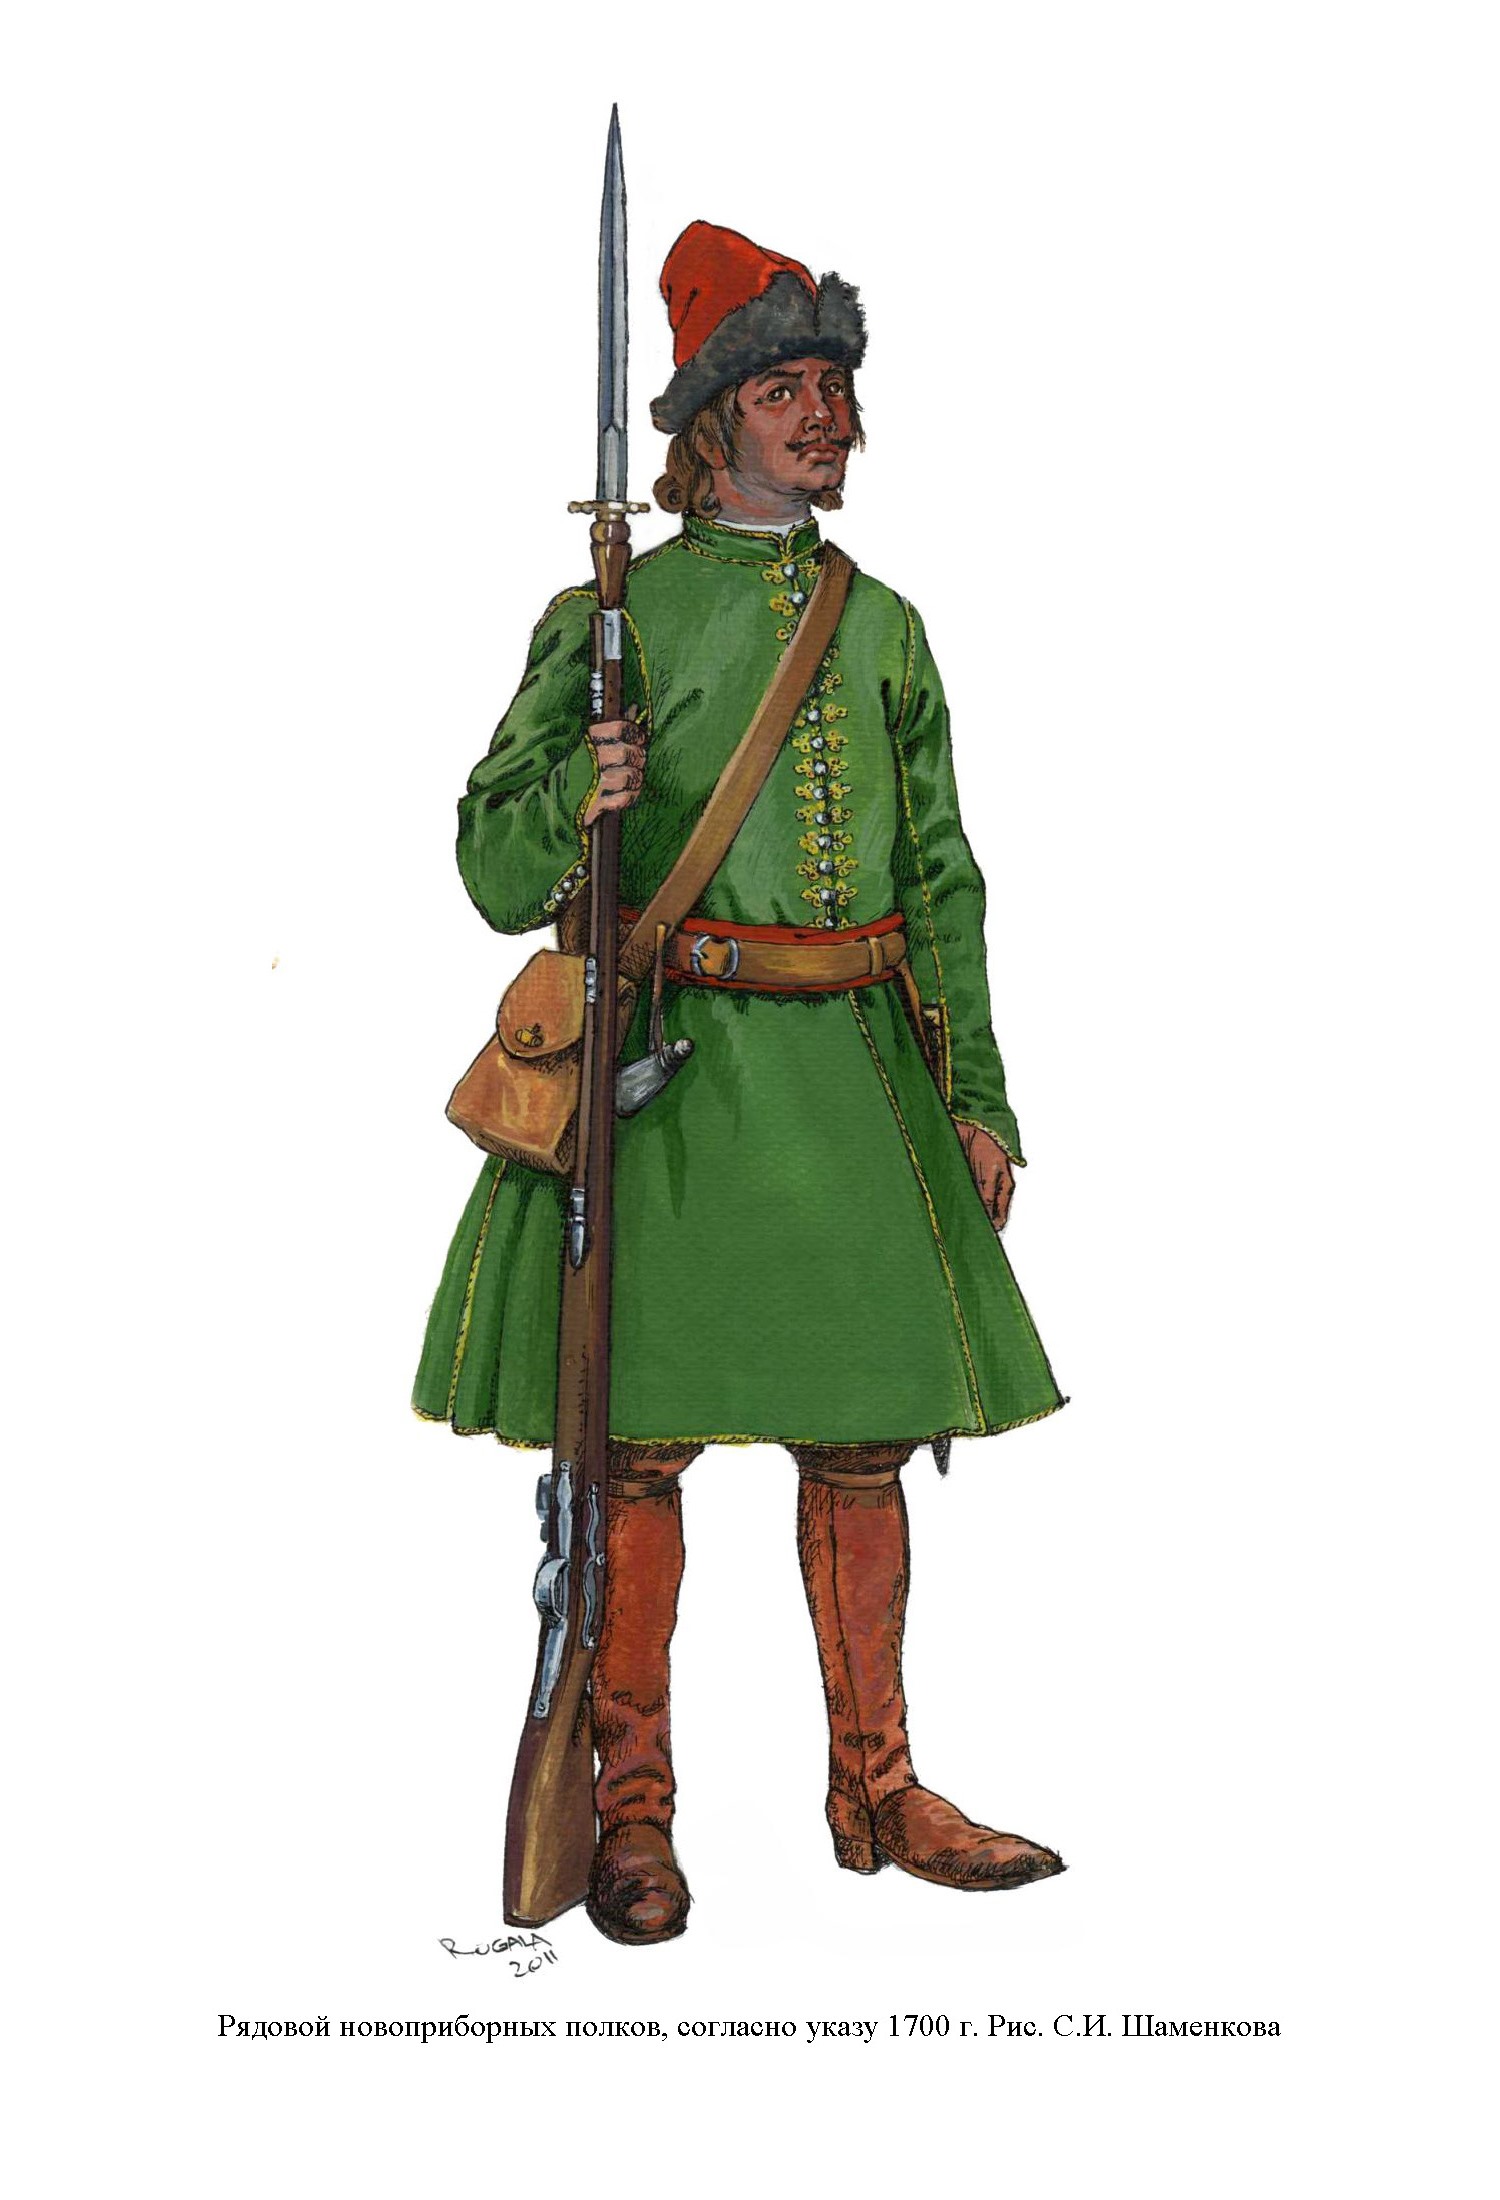 Венгерское платье пехотных полков Петра 1